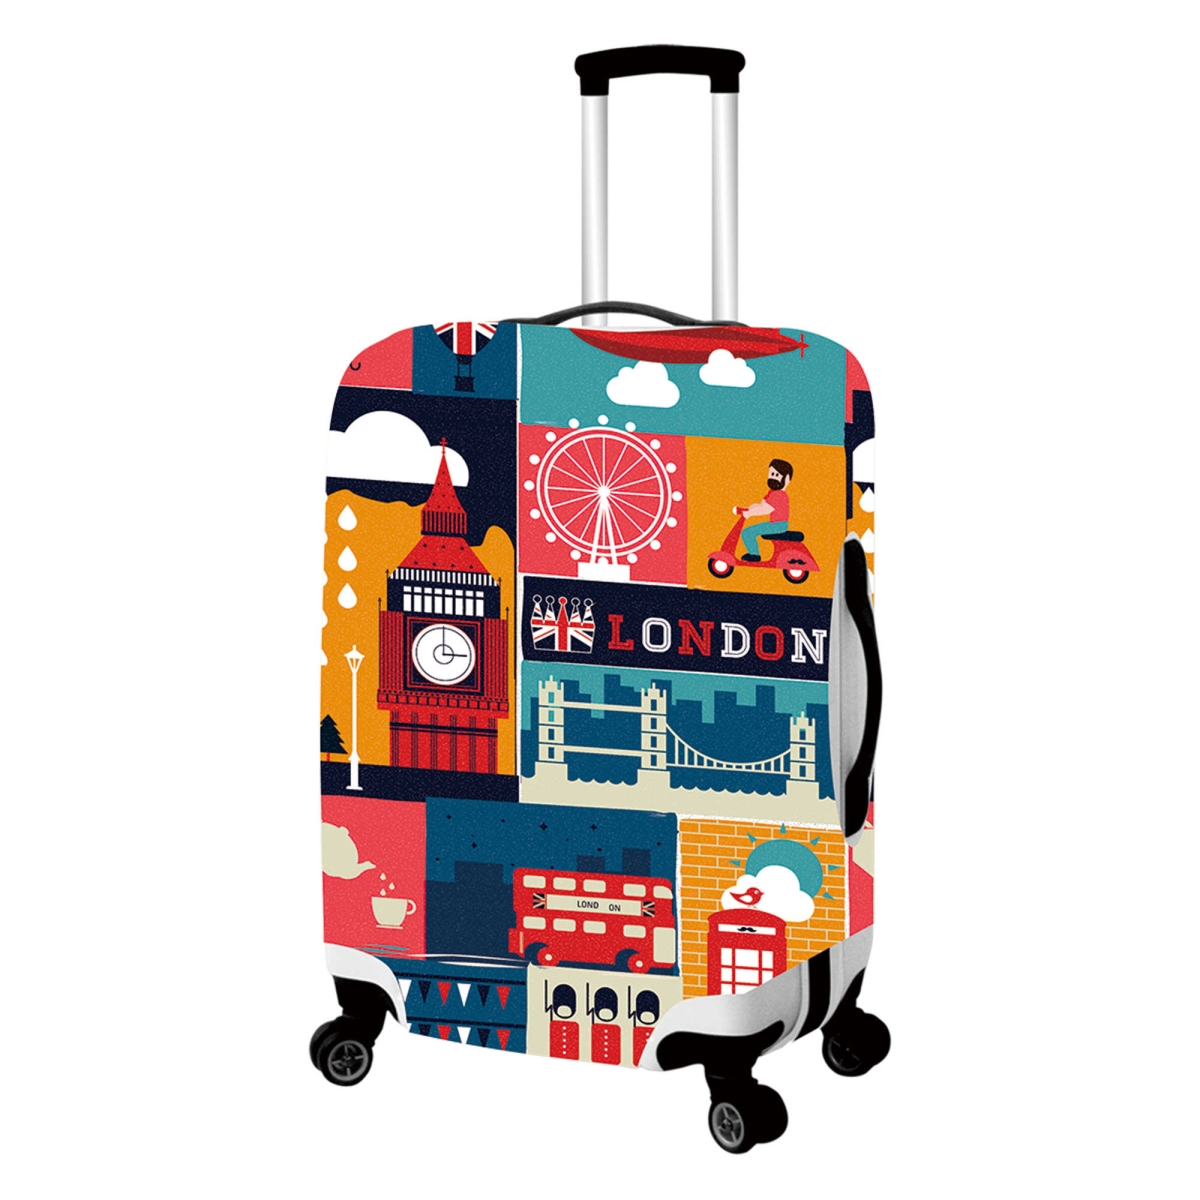 9003-sm London-primeware Luggage Cover - Small